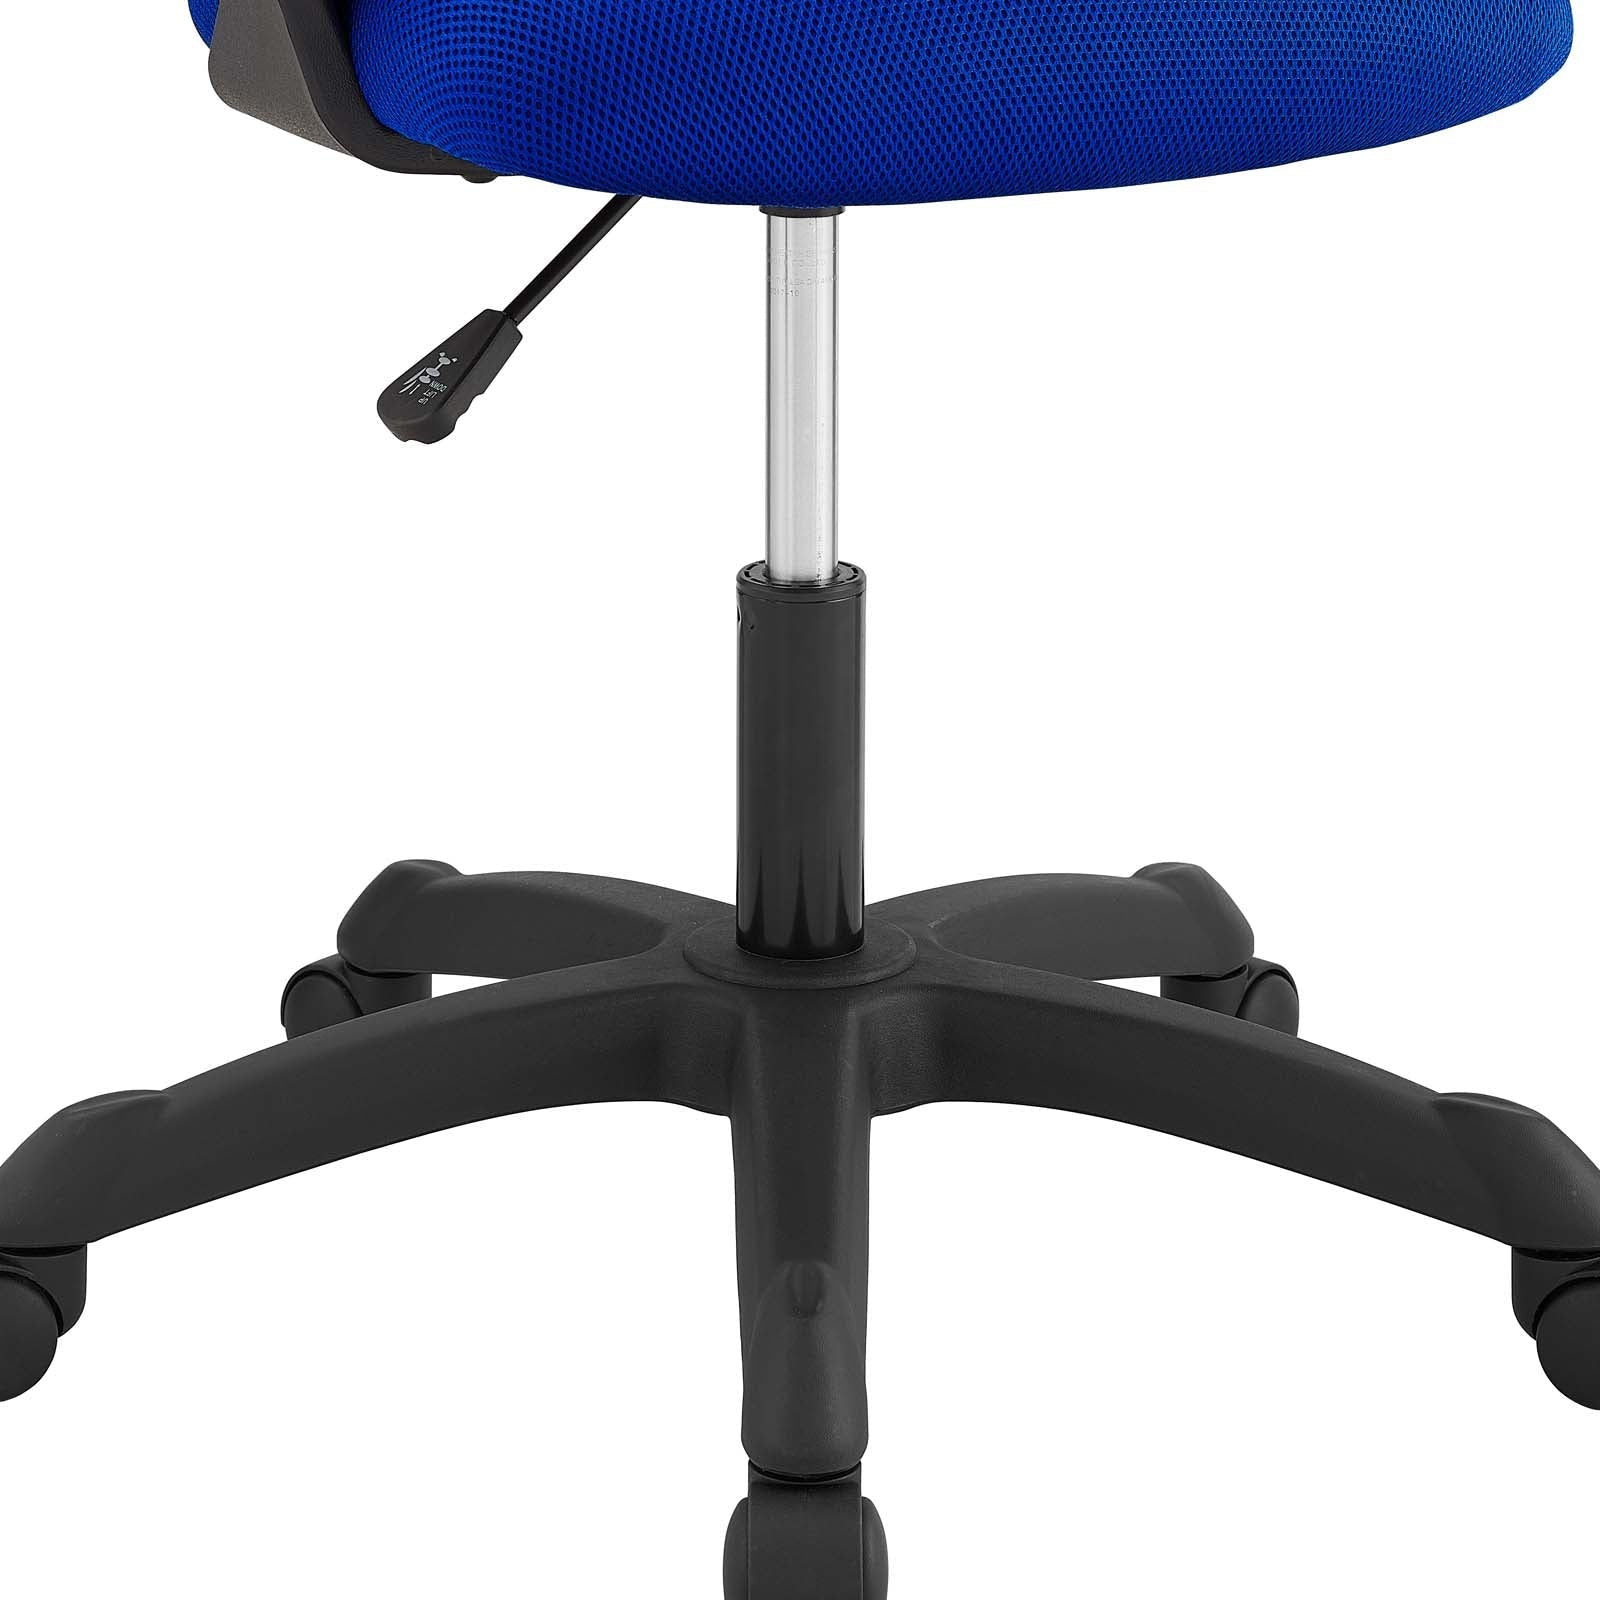 Calvin Mesh Office Chair